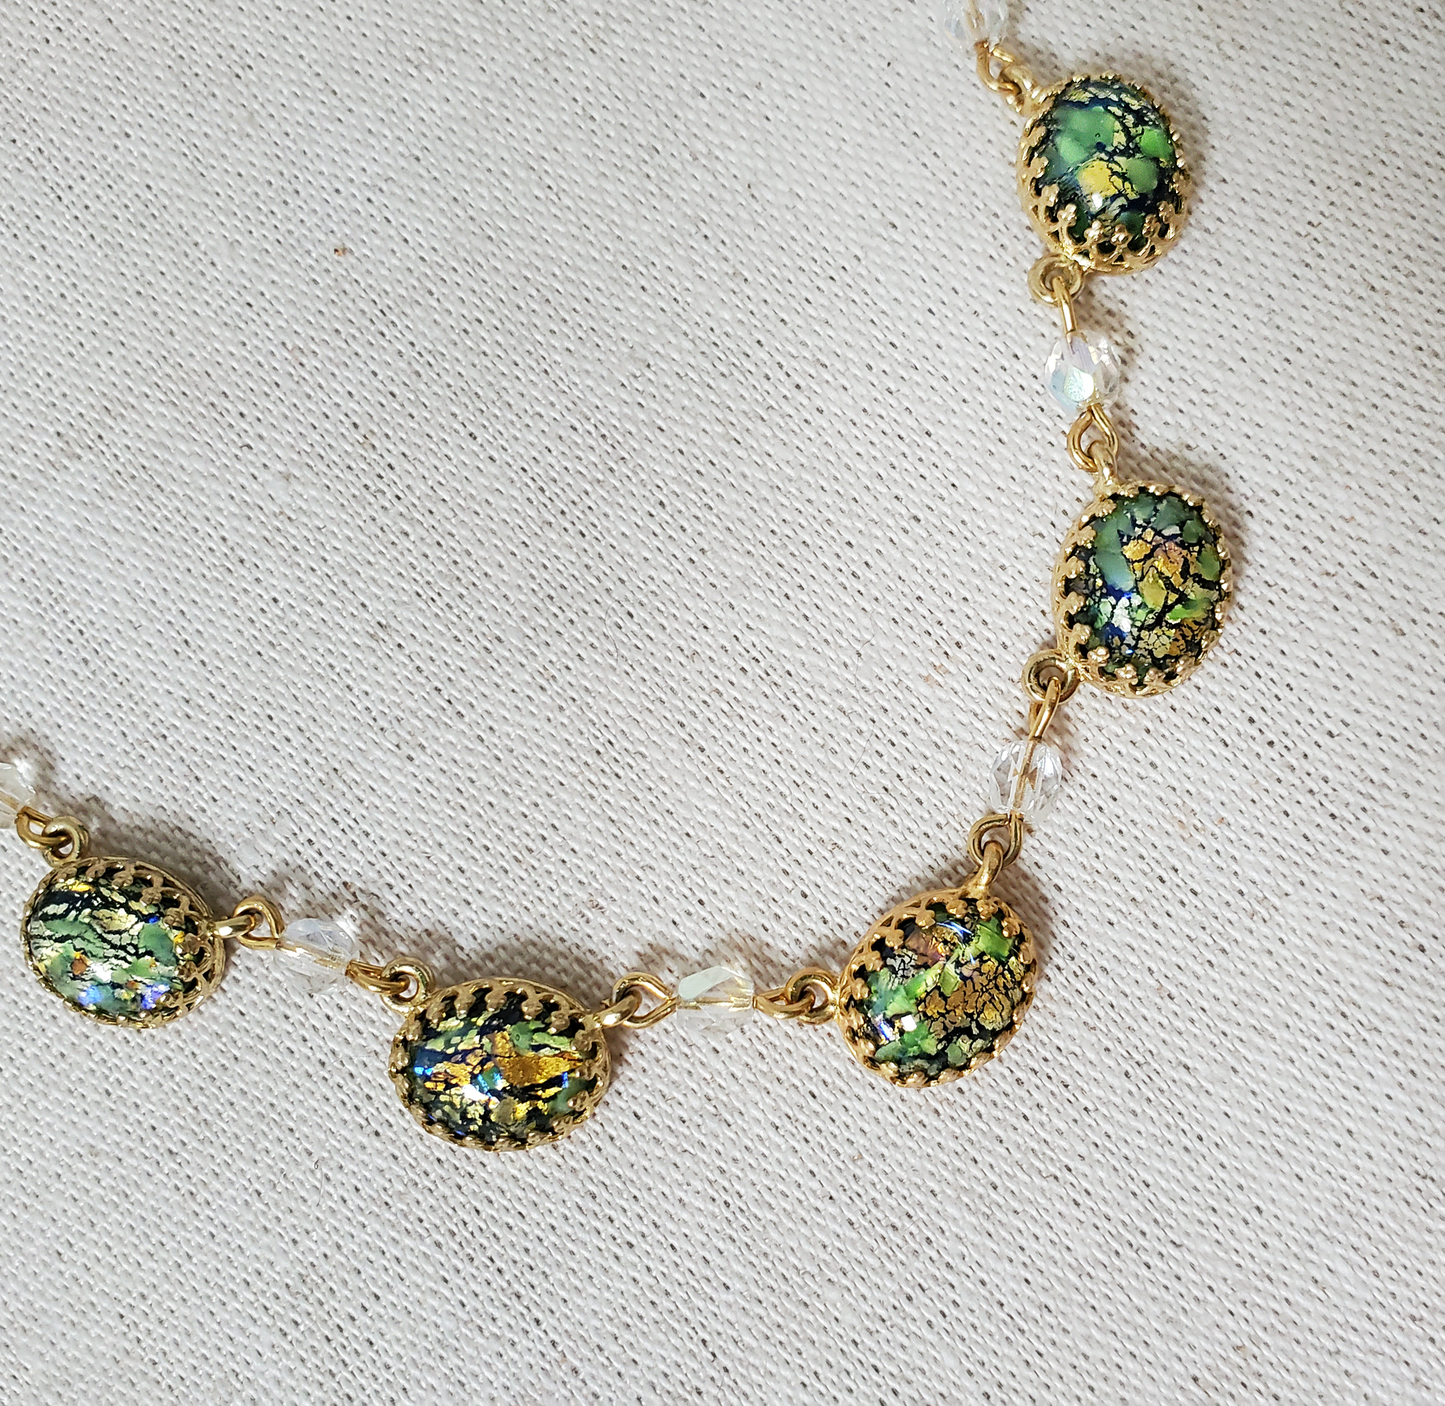 Czech Glass Green Fire Opal Necklace